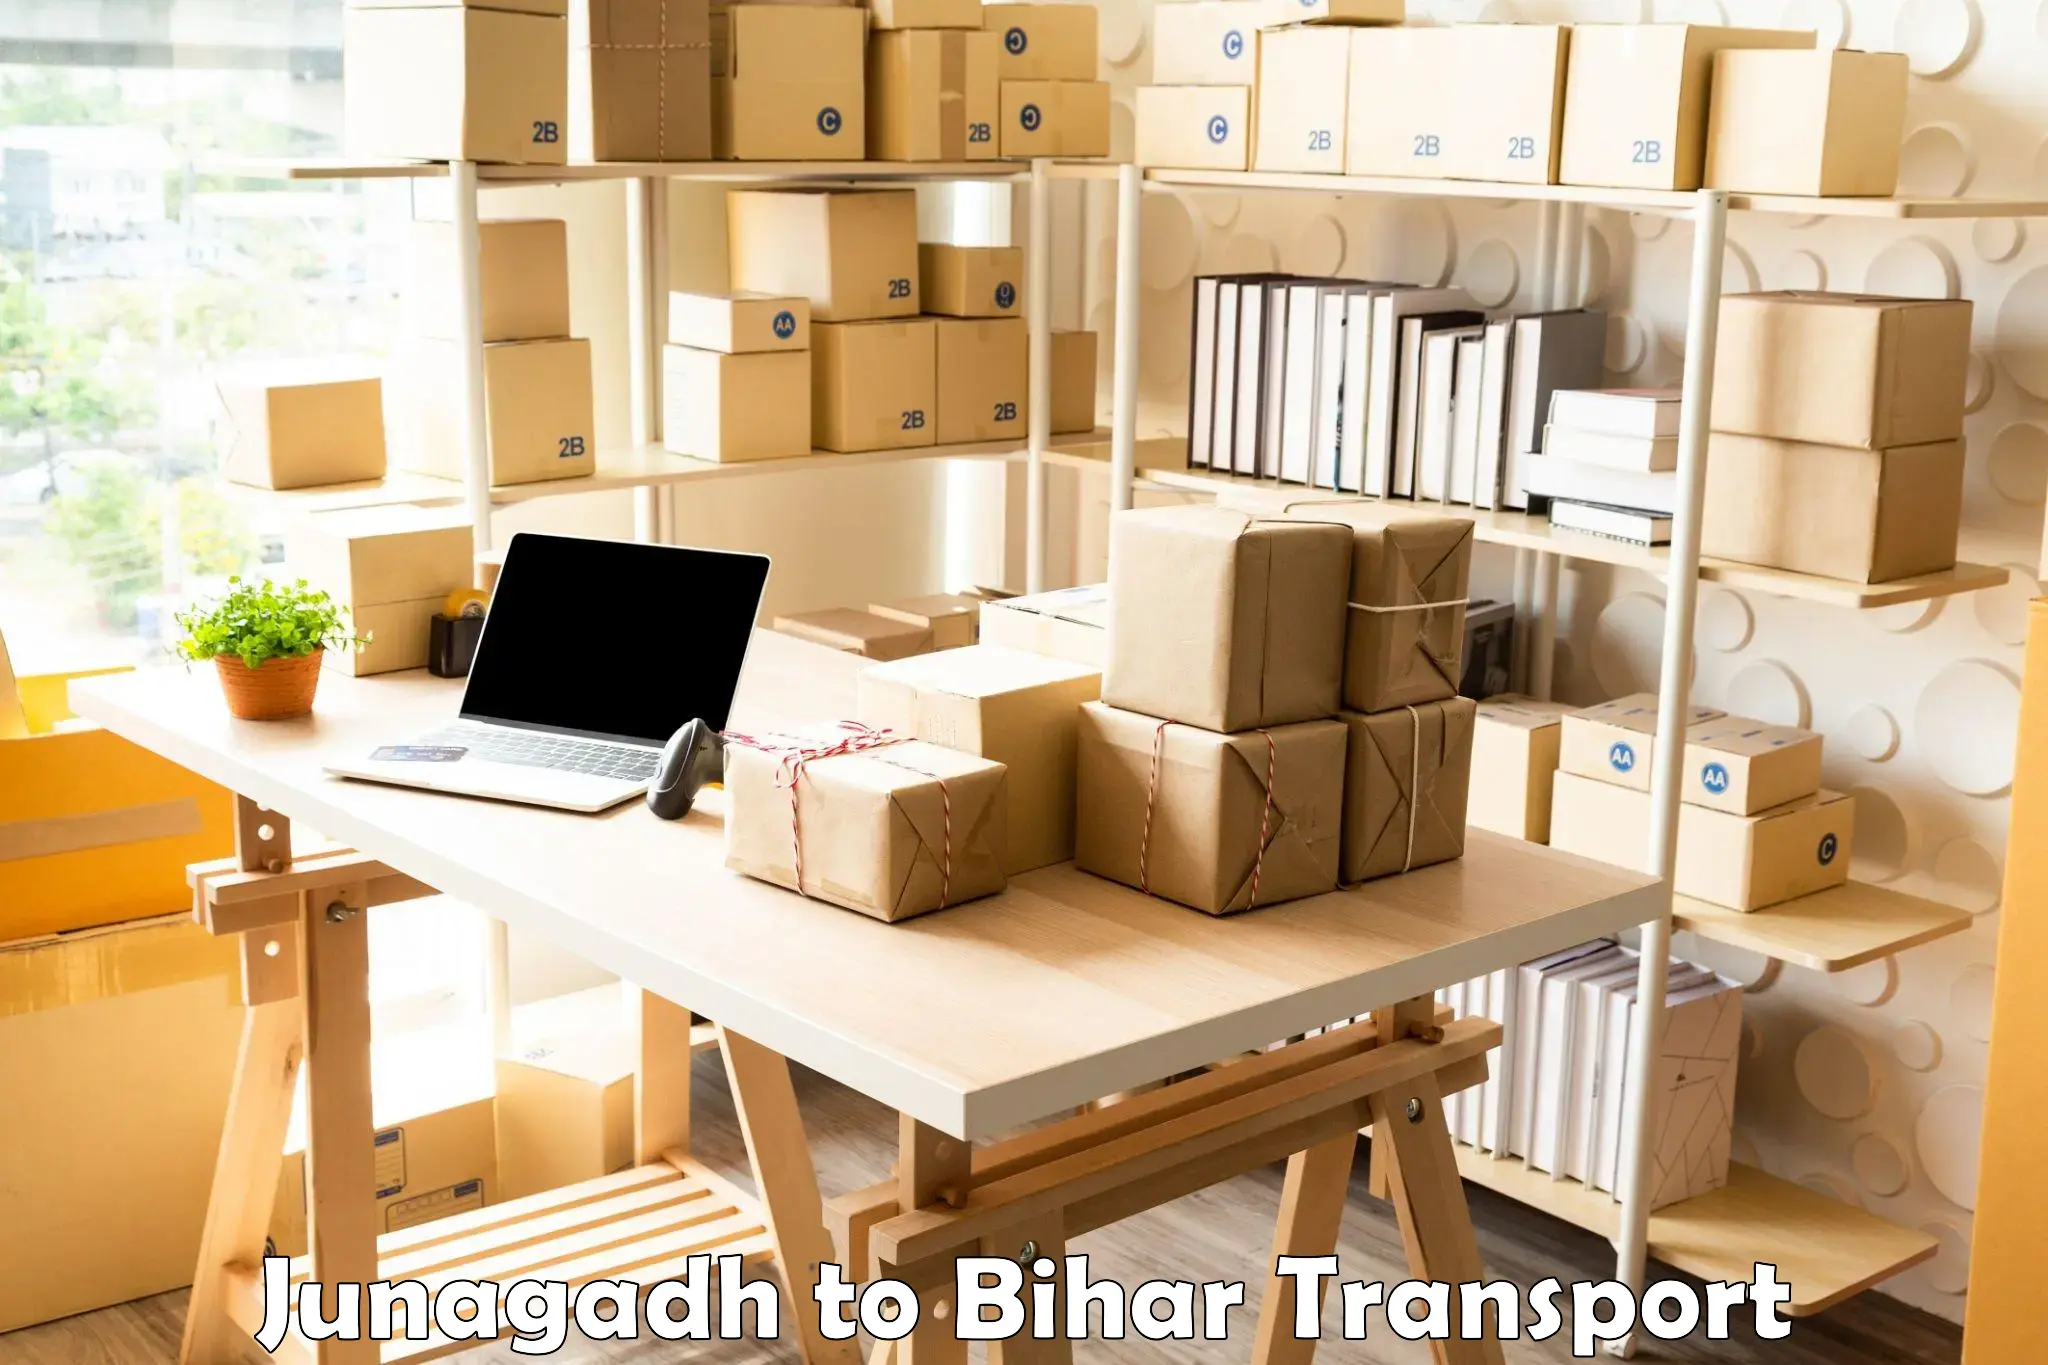 Transport in sharing Junagadh to Tekari